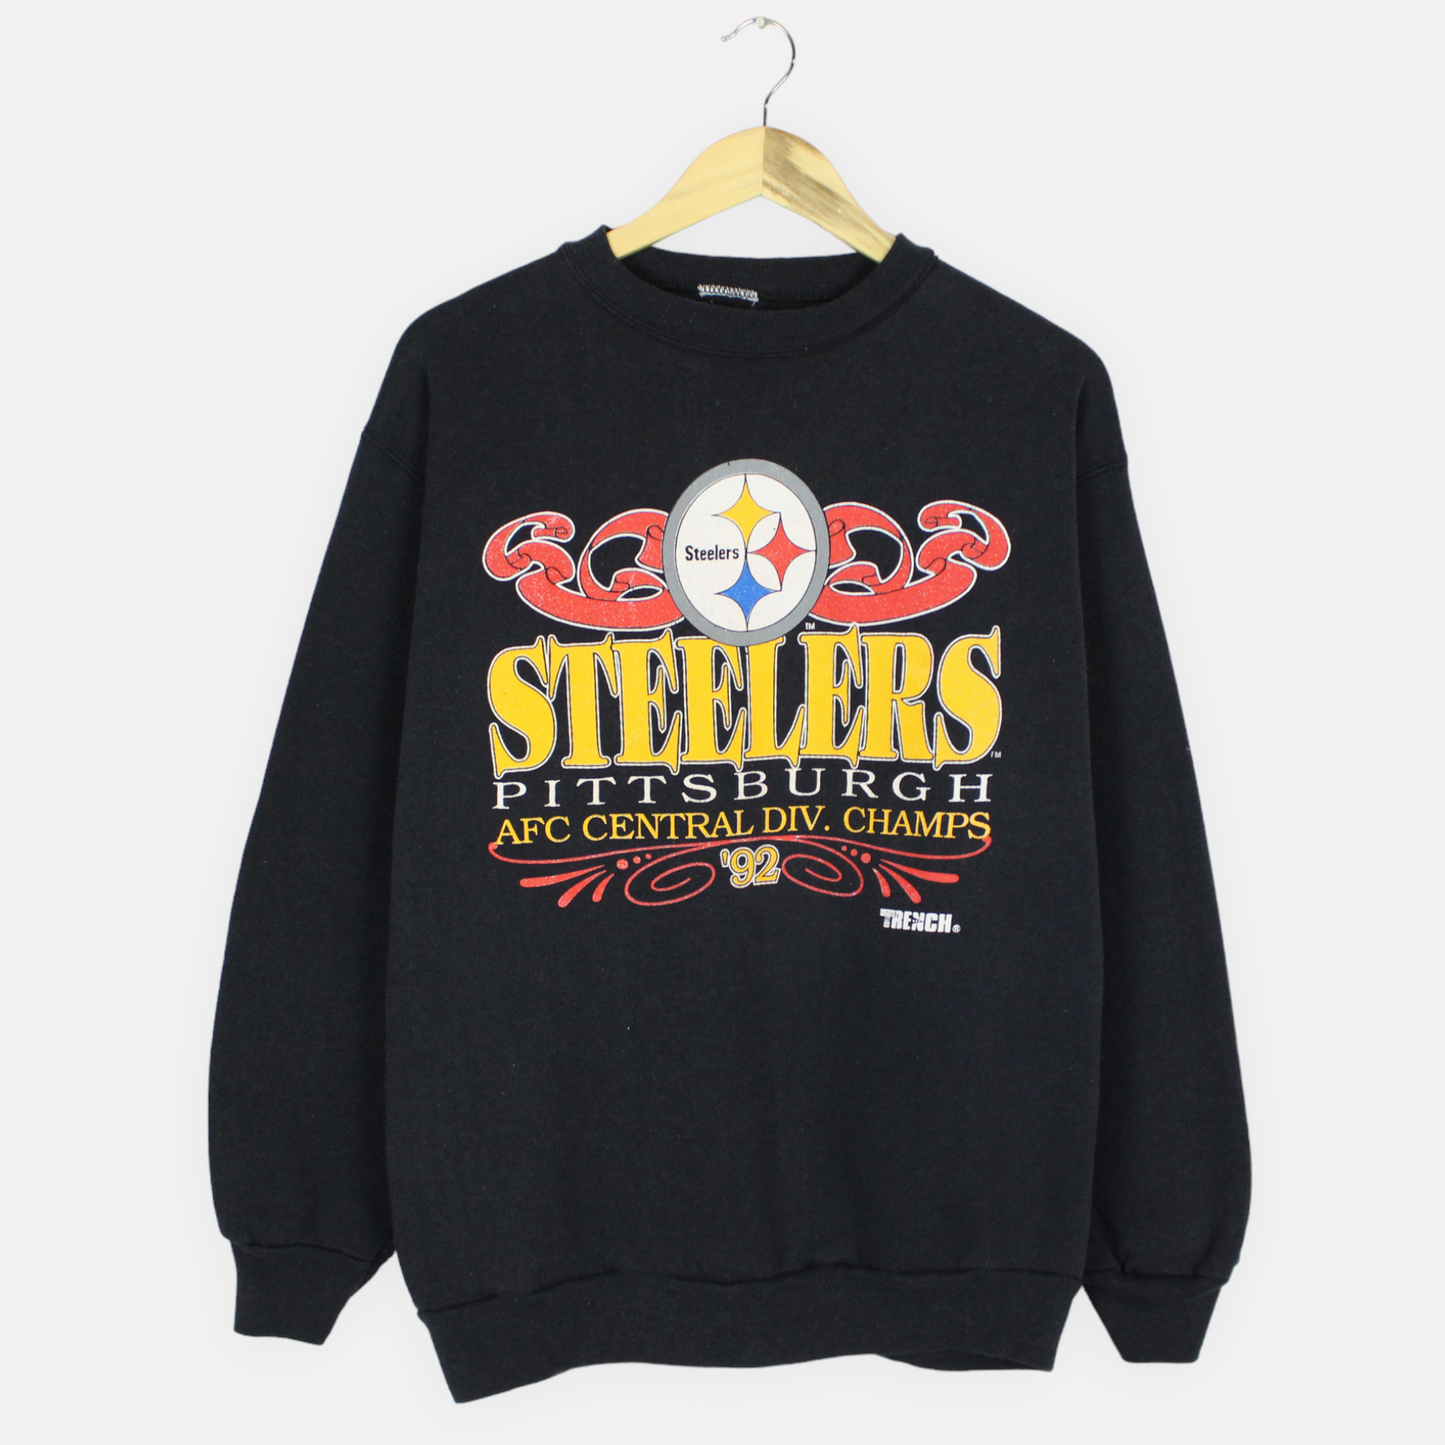 Vintage 1992 Pittsburgh Steelers NFL Sweatshirt - L